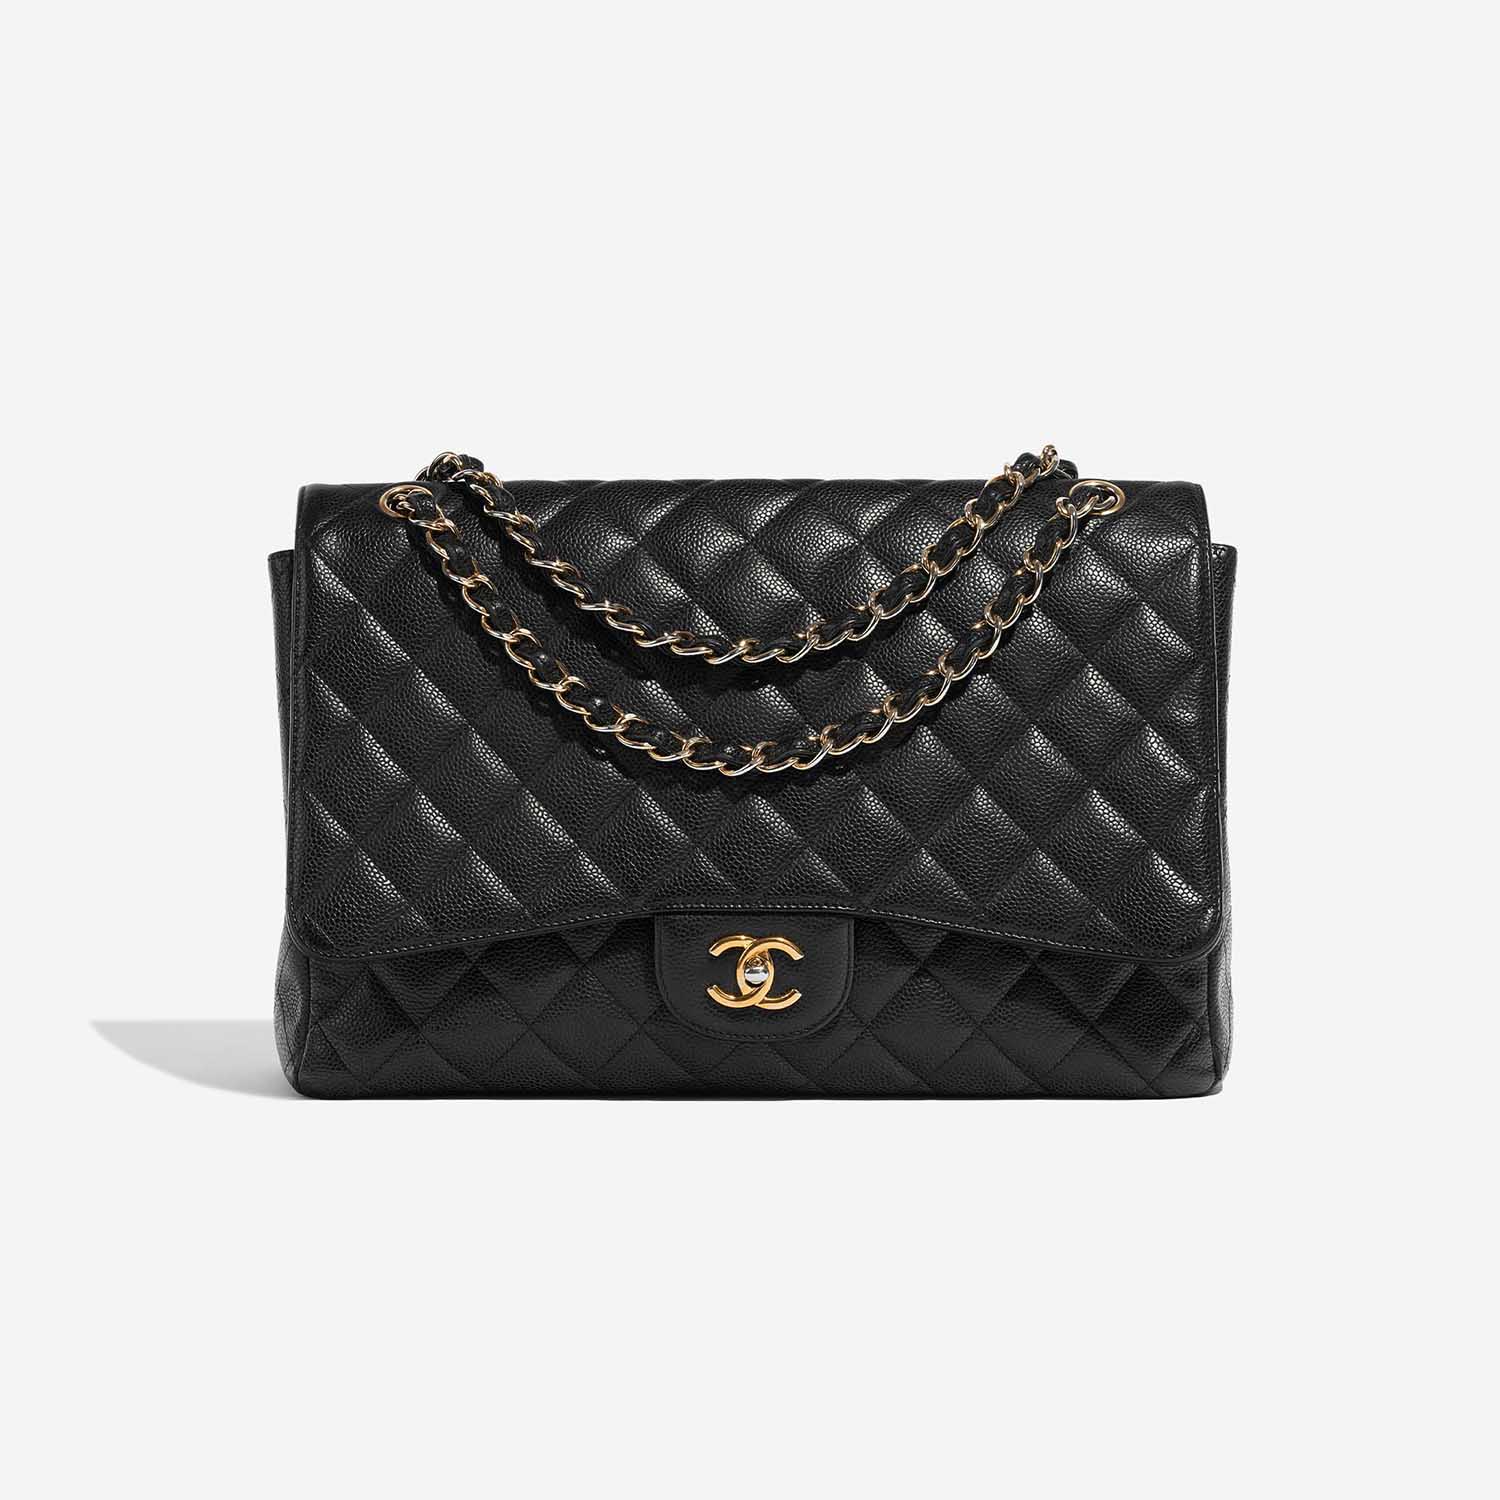 Sac Chanel d'occasion Timeless Maxi Caviar Noir Noir Devant | Vendre votre sac de créateur sur Saclab.com